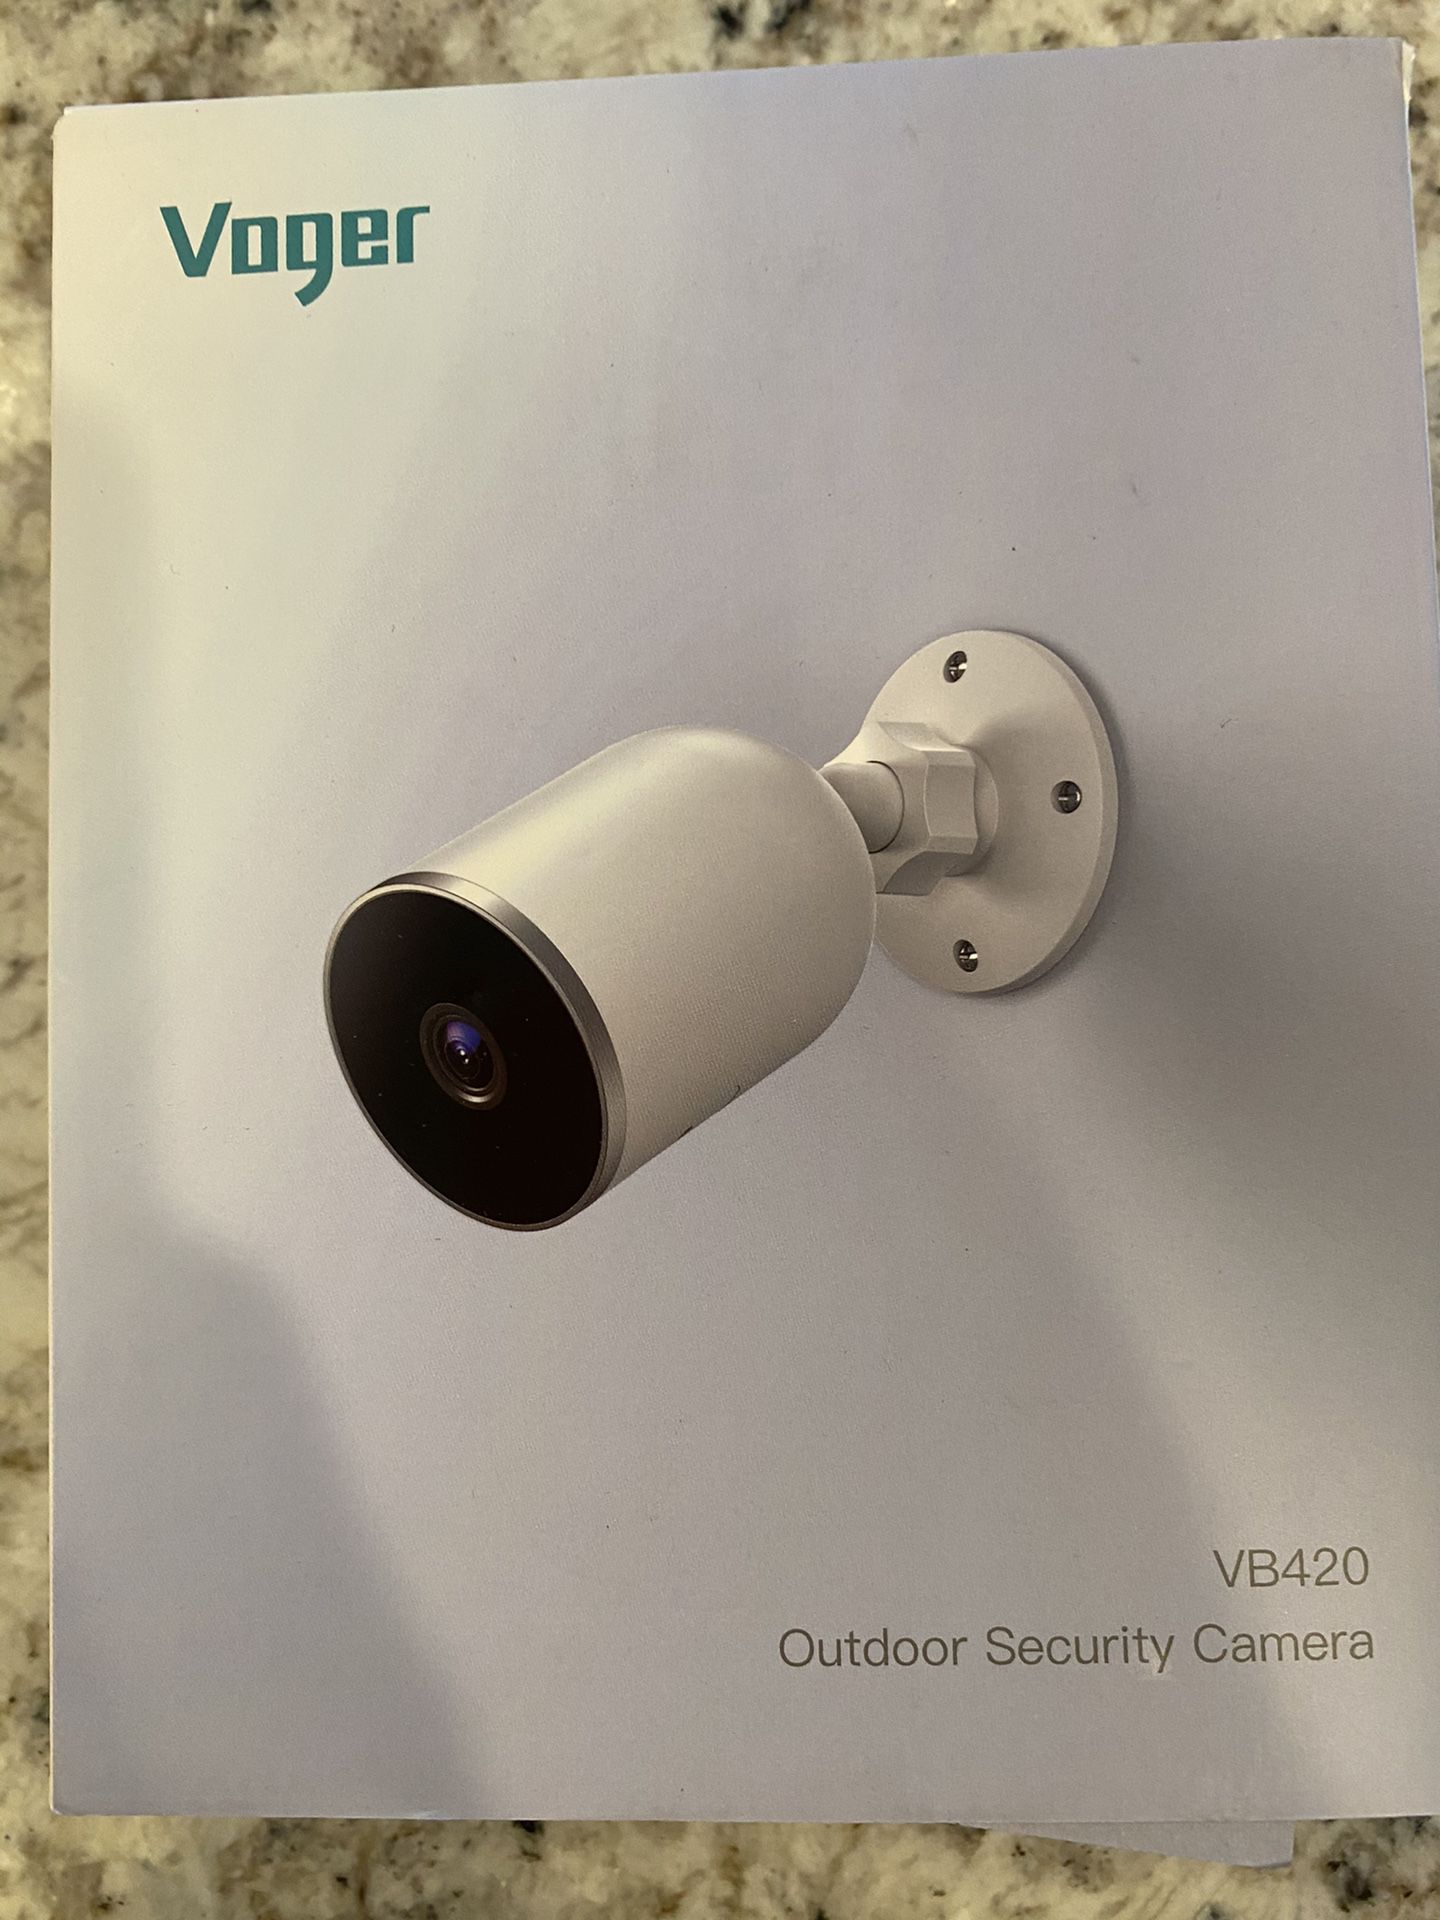 Outdoor security camera